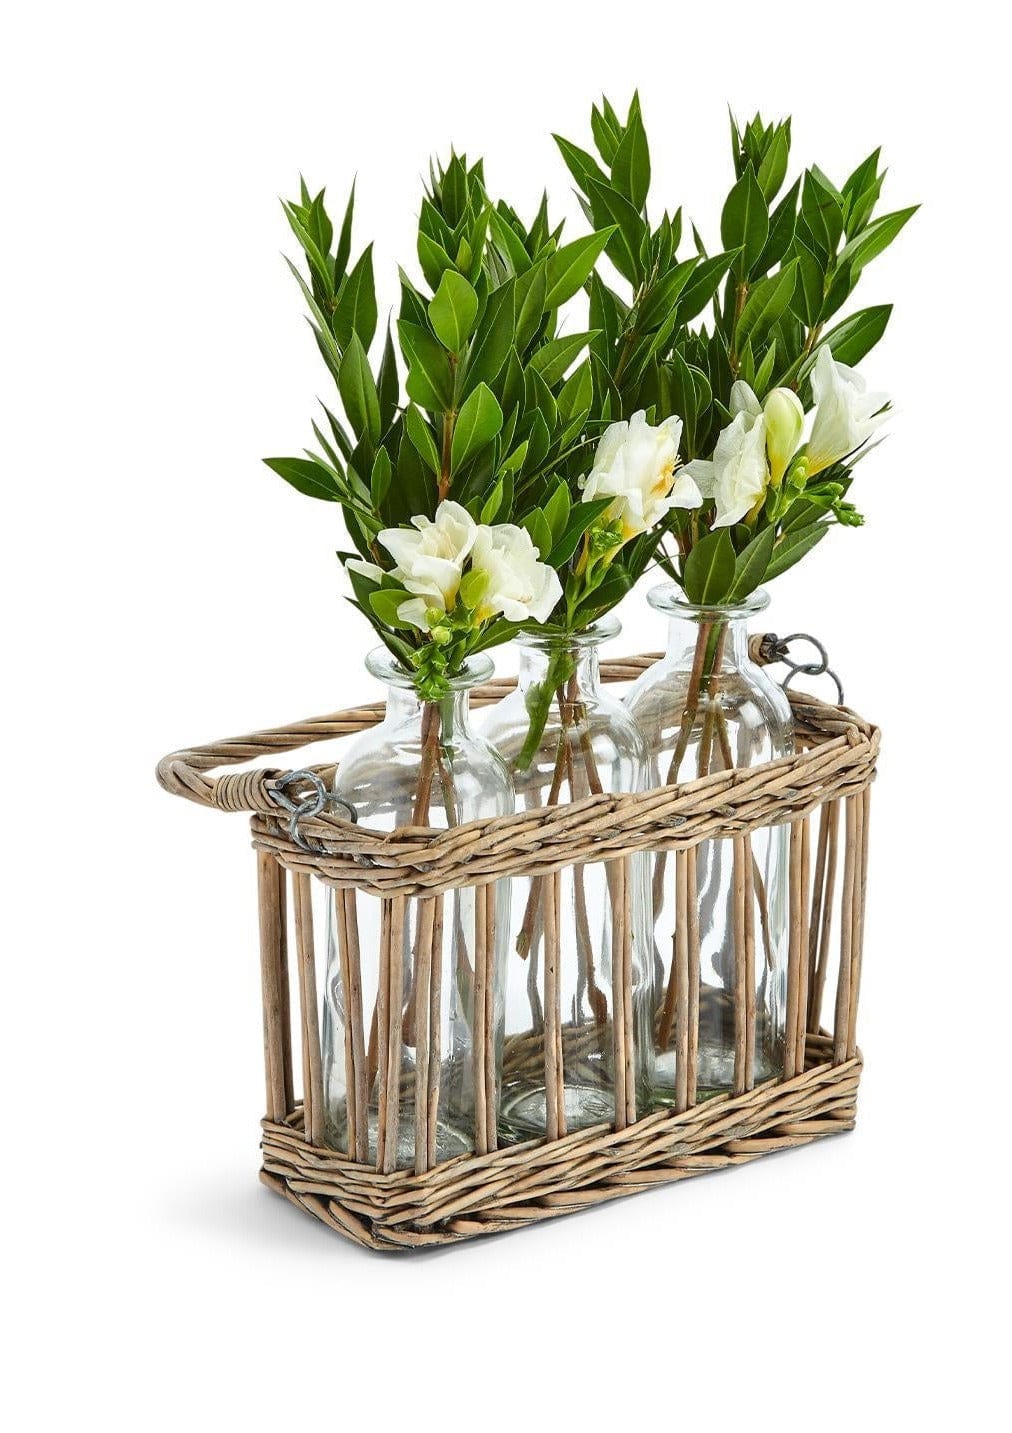 Soiree Flower Glass Bottle Vases in Basket Two's Company Vases